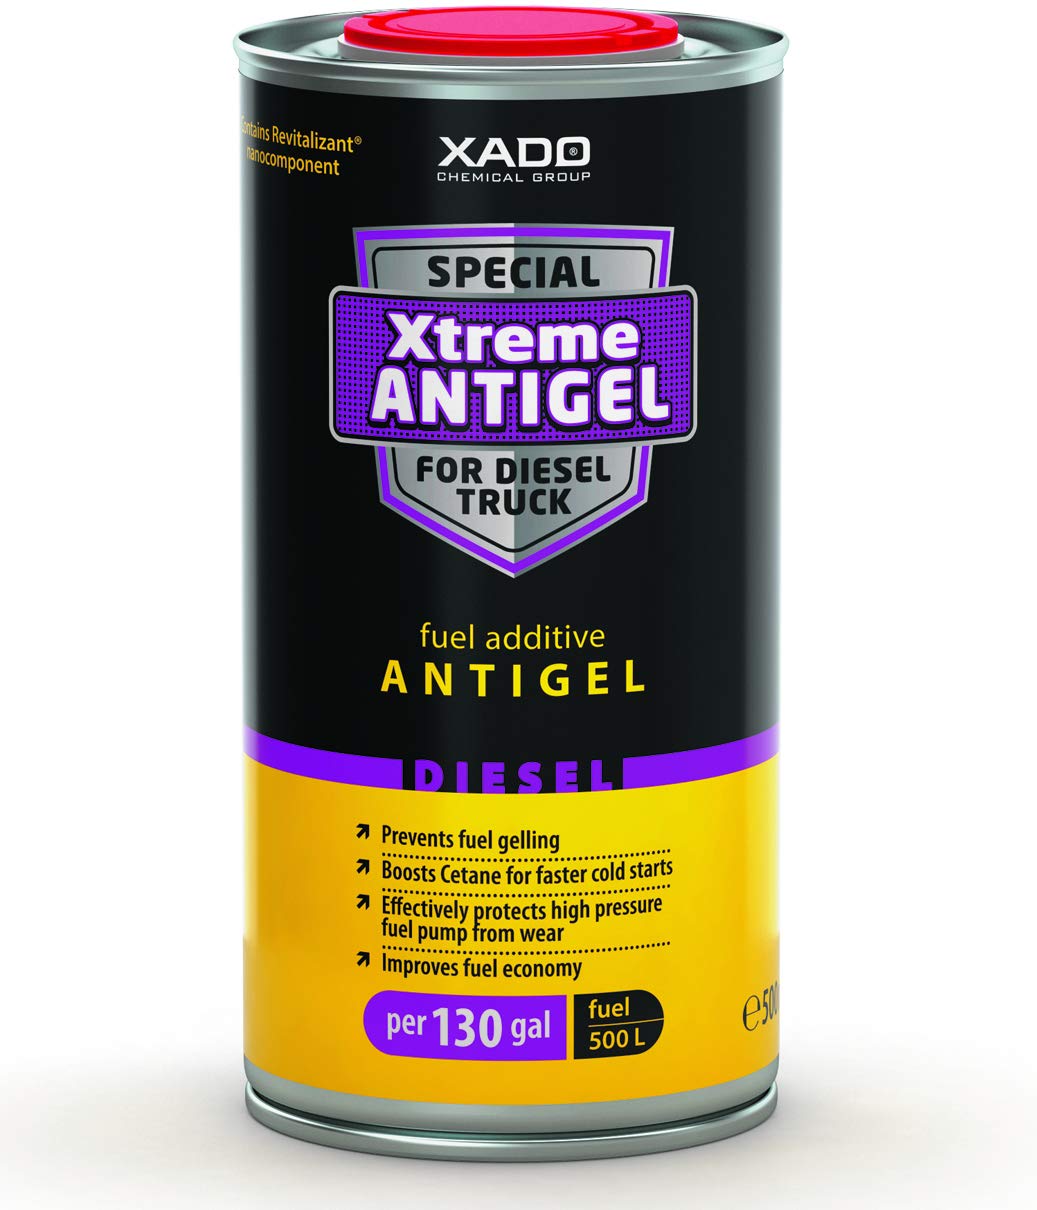 XADO Anti-Gel Diesel Winter Schutz Additiv Fließ-verbesserer Diesel-Schutz Kälte-Schutz Frost-Schutz Xtreme von XADO